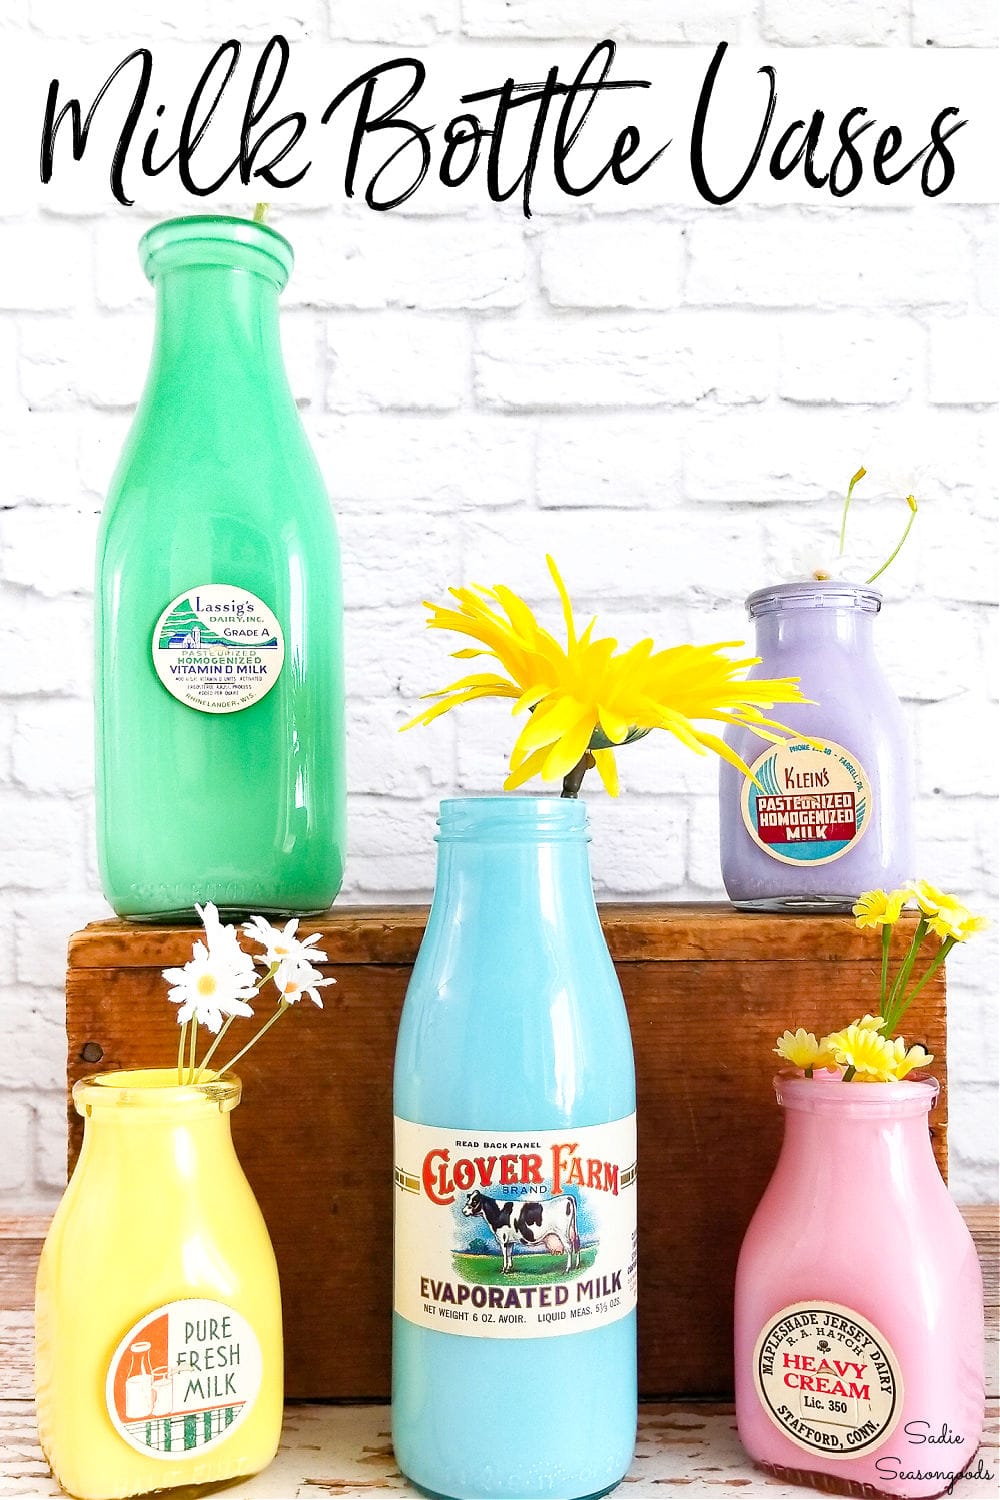 Milk bottle vases